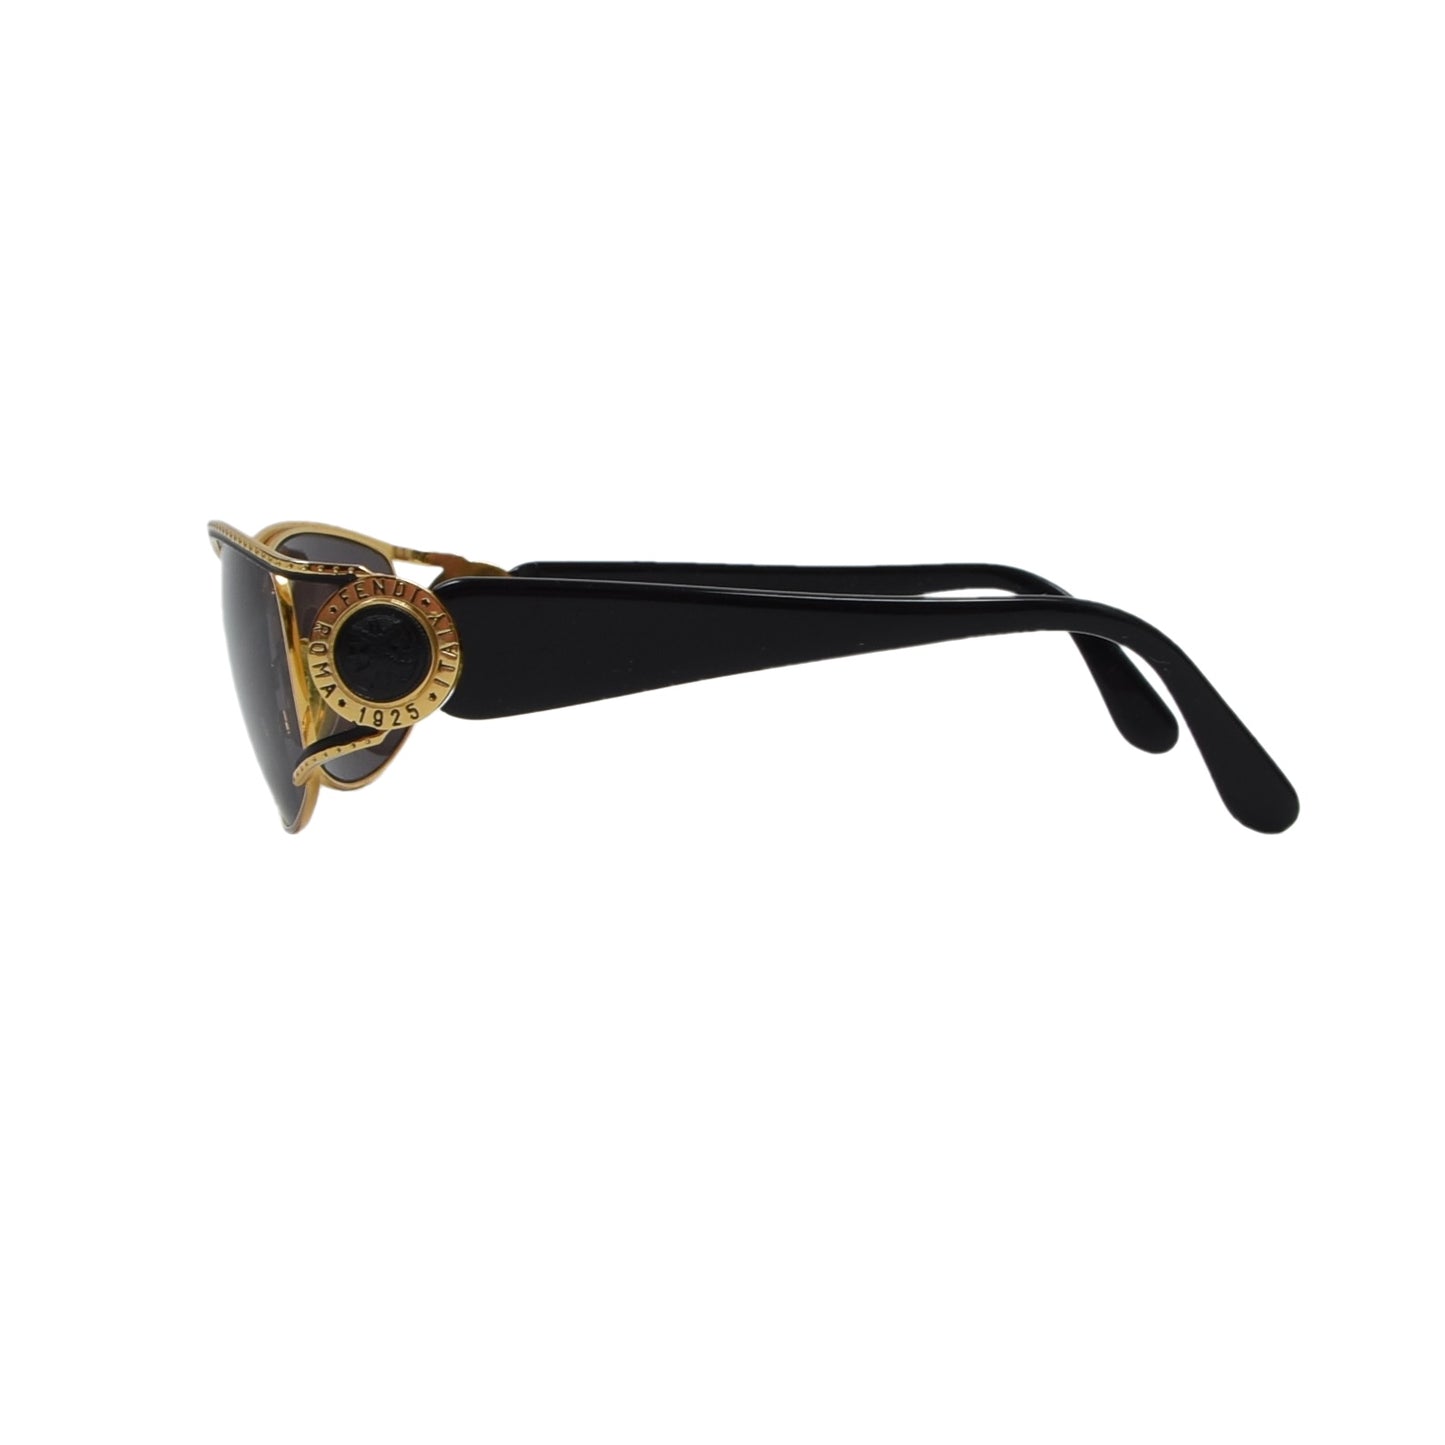 Vintage Fendi Sonnenbrillen Mod. 7025, Col. 103 - Gold & Schwarz